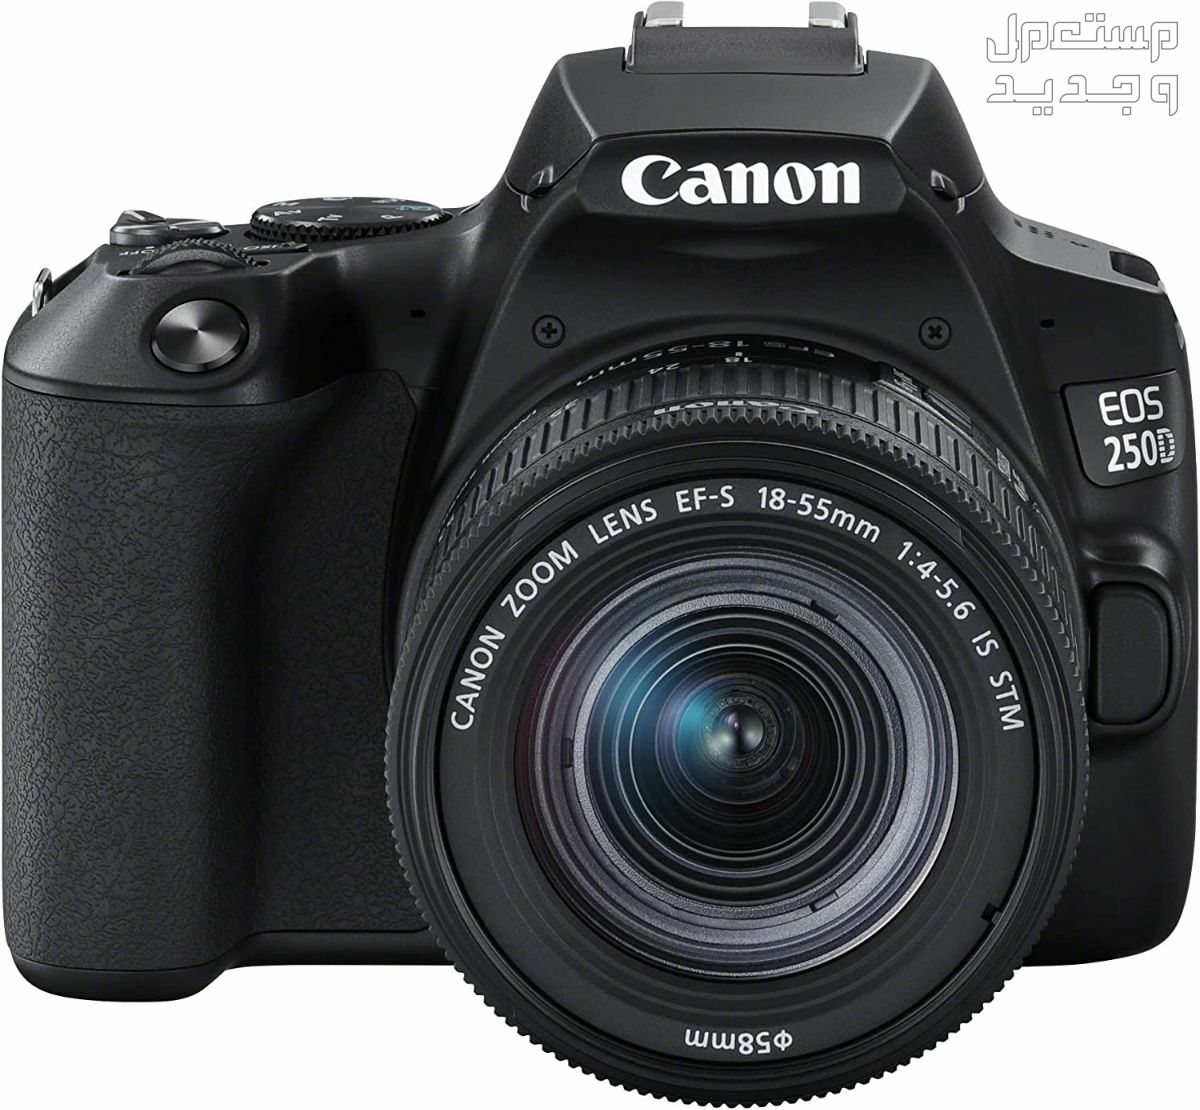 سعر ومميزات ومواصفات أرخص 5 كاميرات تصوير من كانون في الأردن مميزات كاميرا Canon EOS 250D